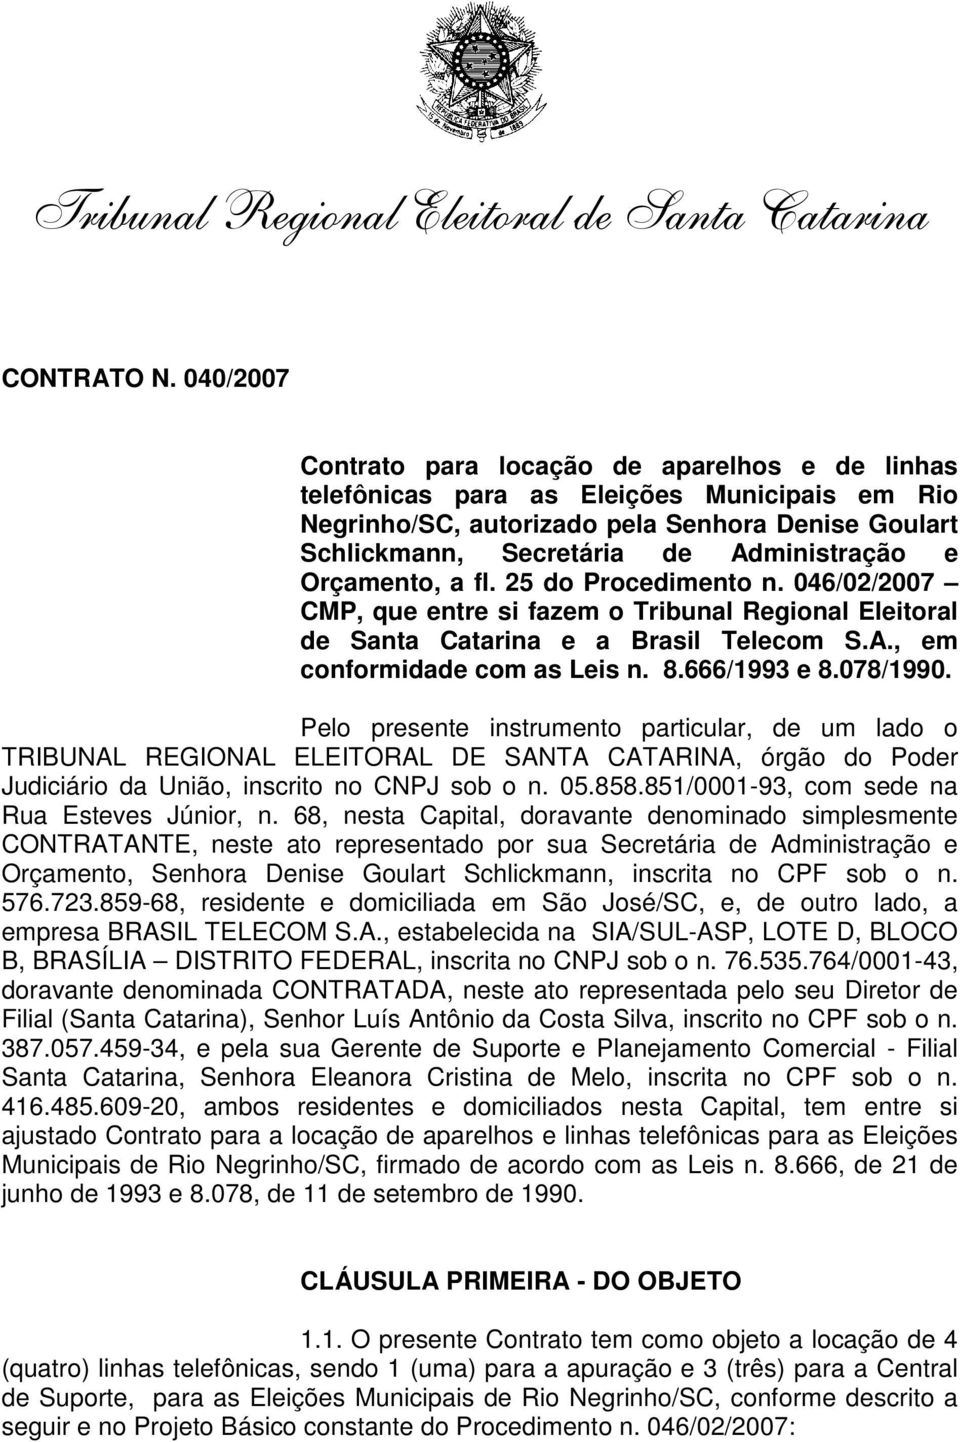 Orçamento, a fl. 25 do Procedimento n. 046/02/2007 CMP, que entre si fazem o Tribunal Regional Eleitoral de Santa Catarina e a Brasil Telecom S.A., em conformidade com as Leis n. 8.666/1993 e 8.